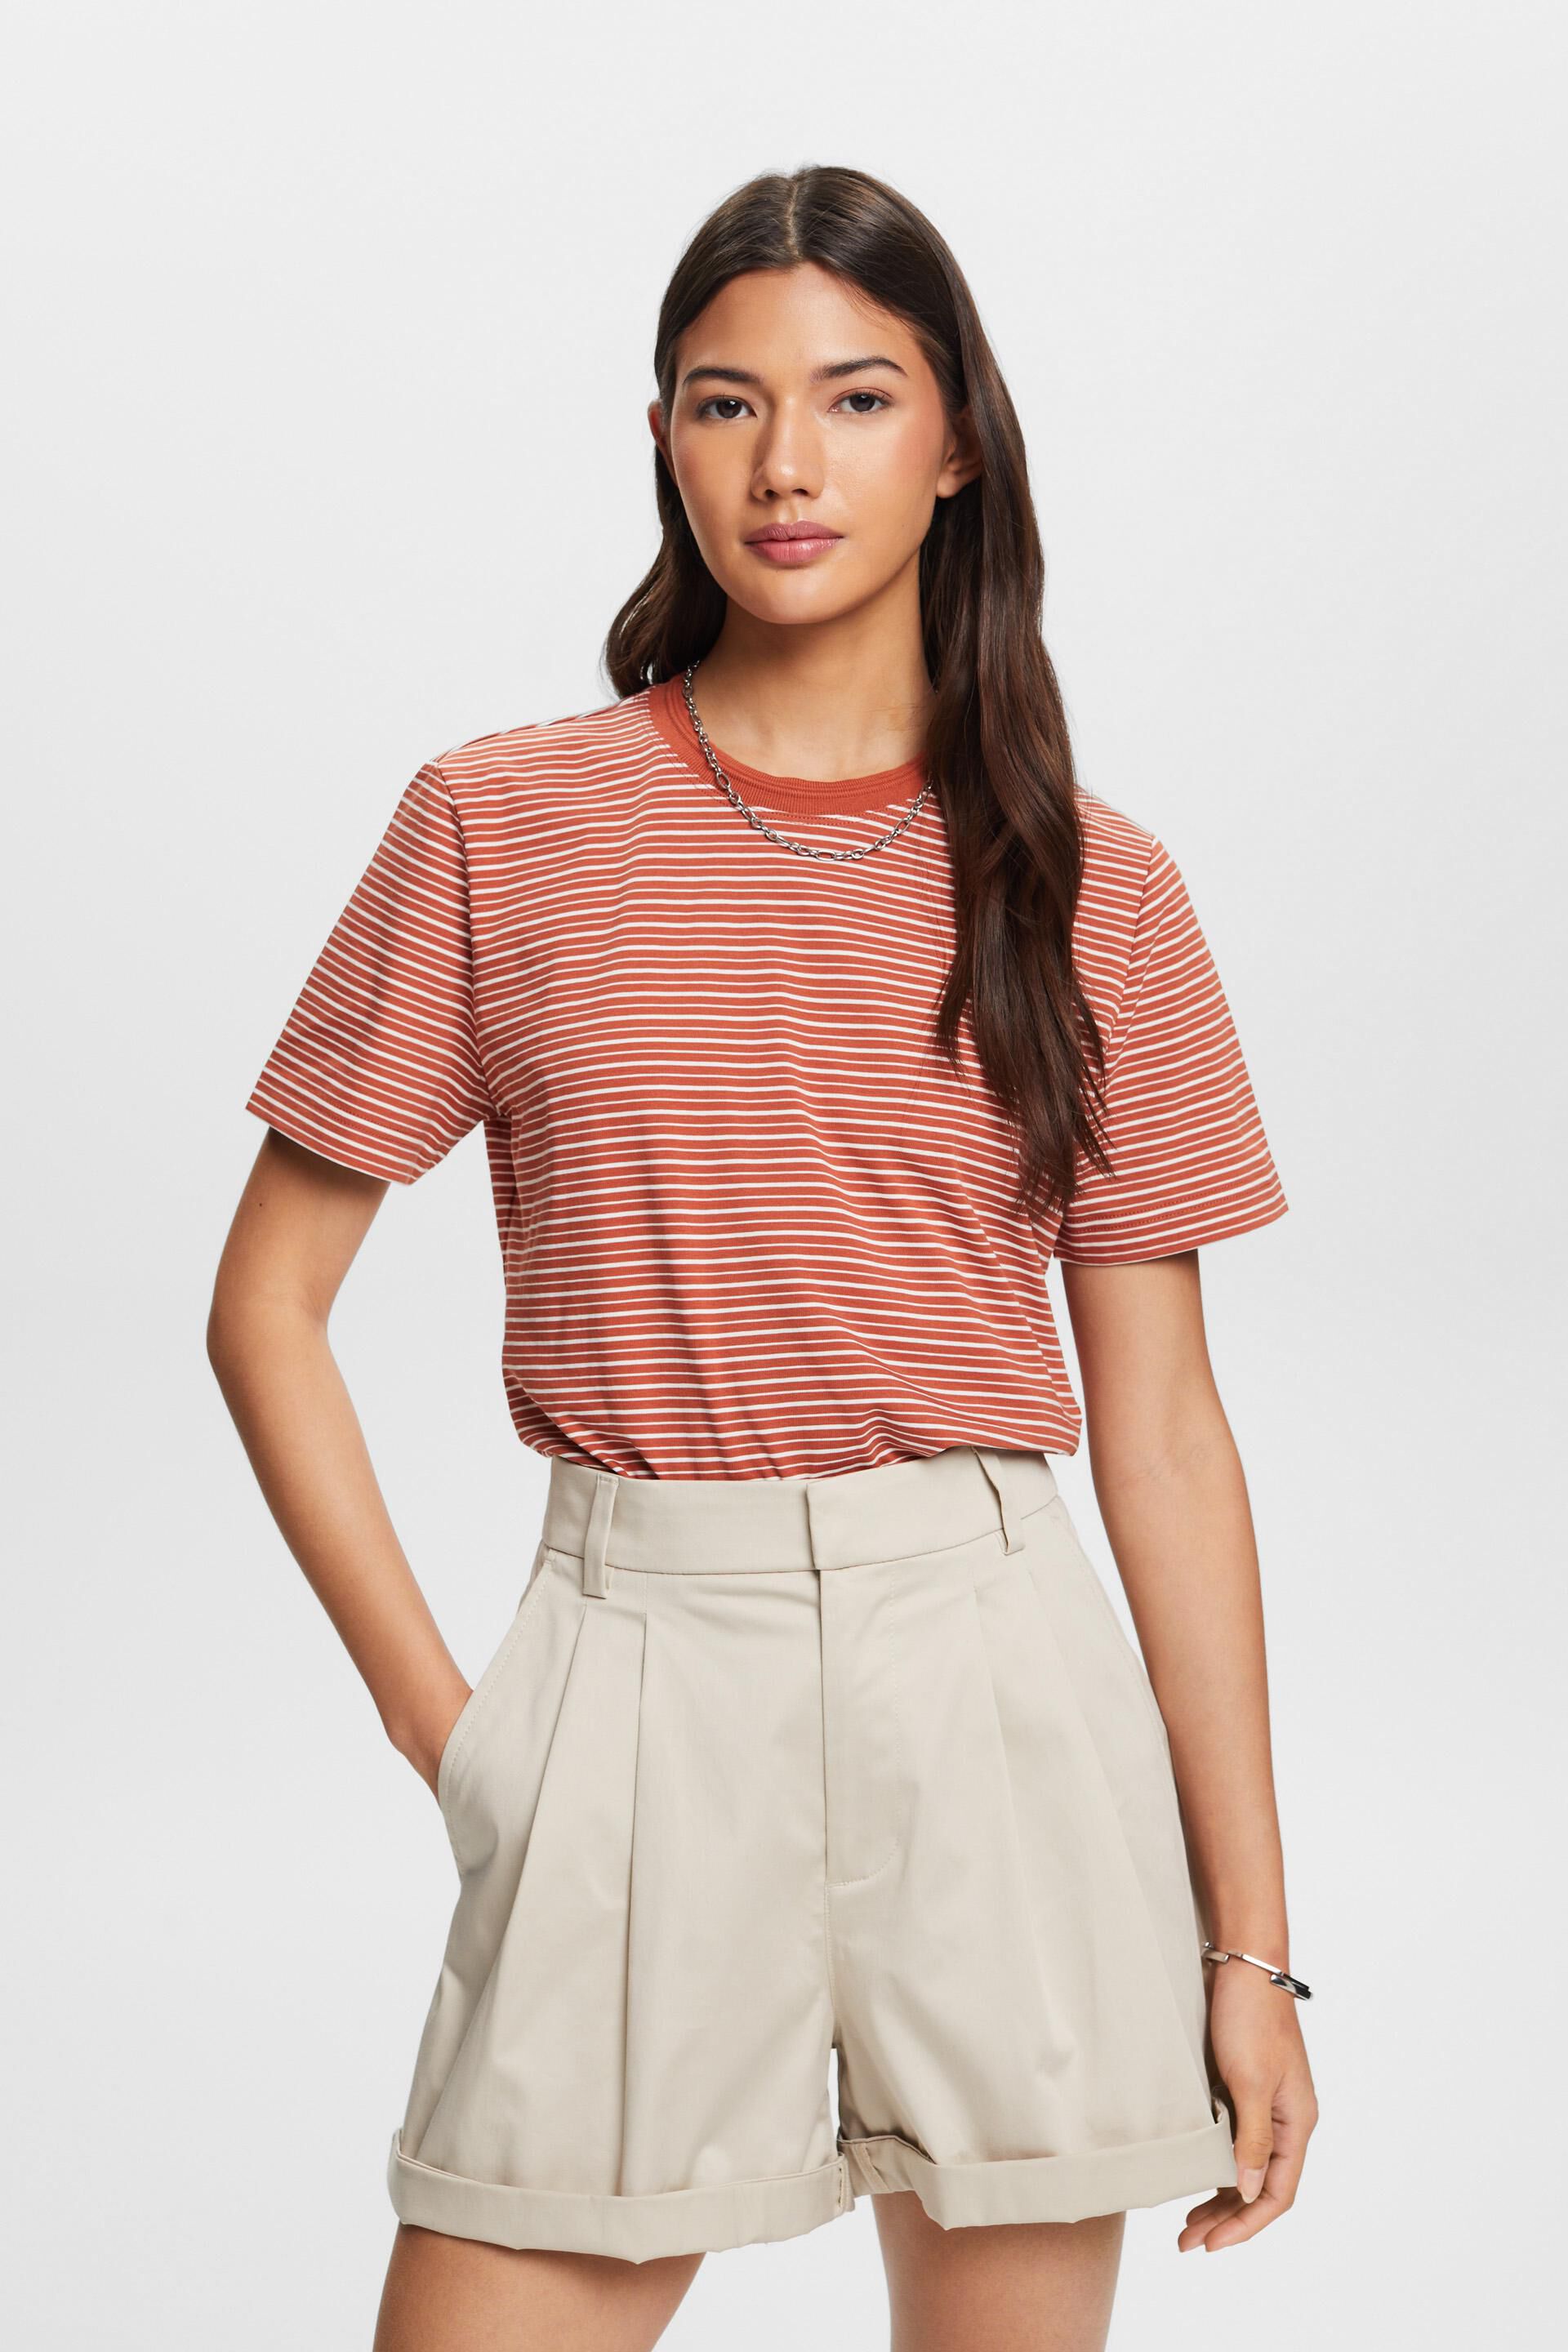 Esprit T-shirt, 100% cotton Striped